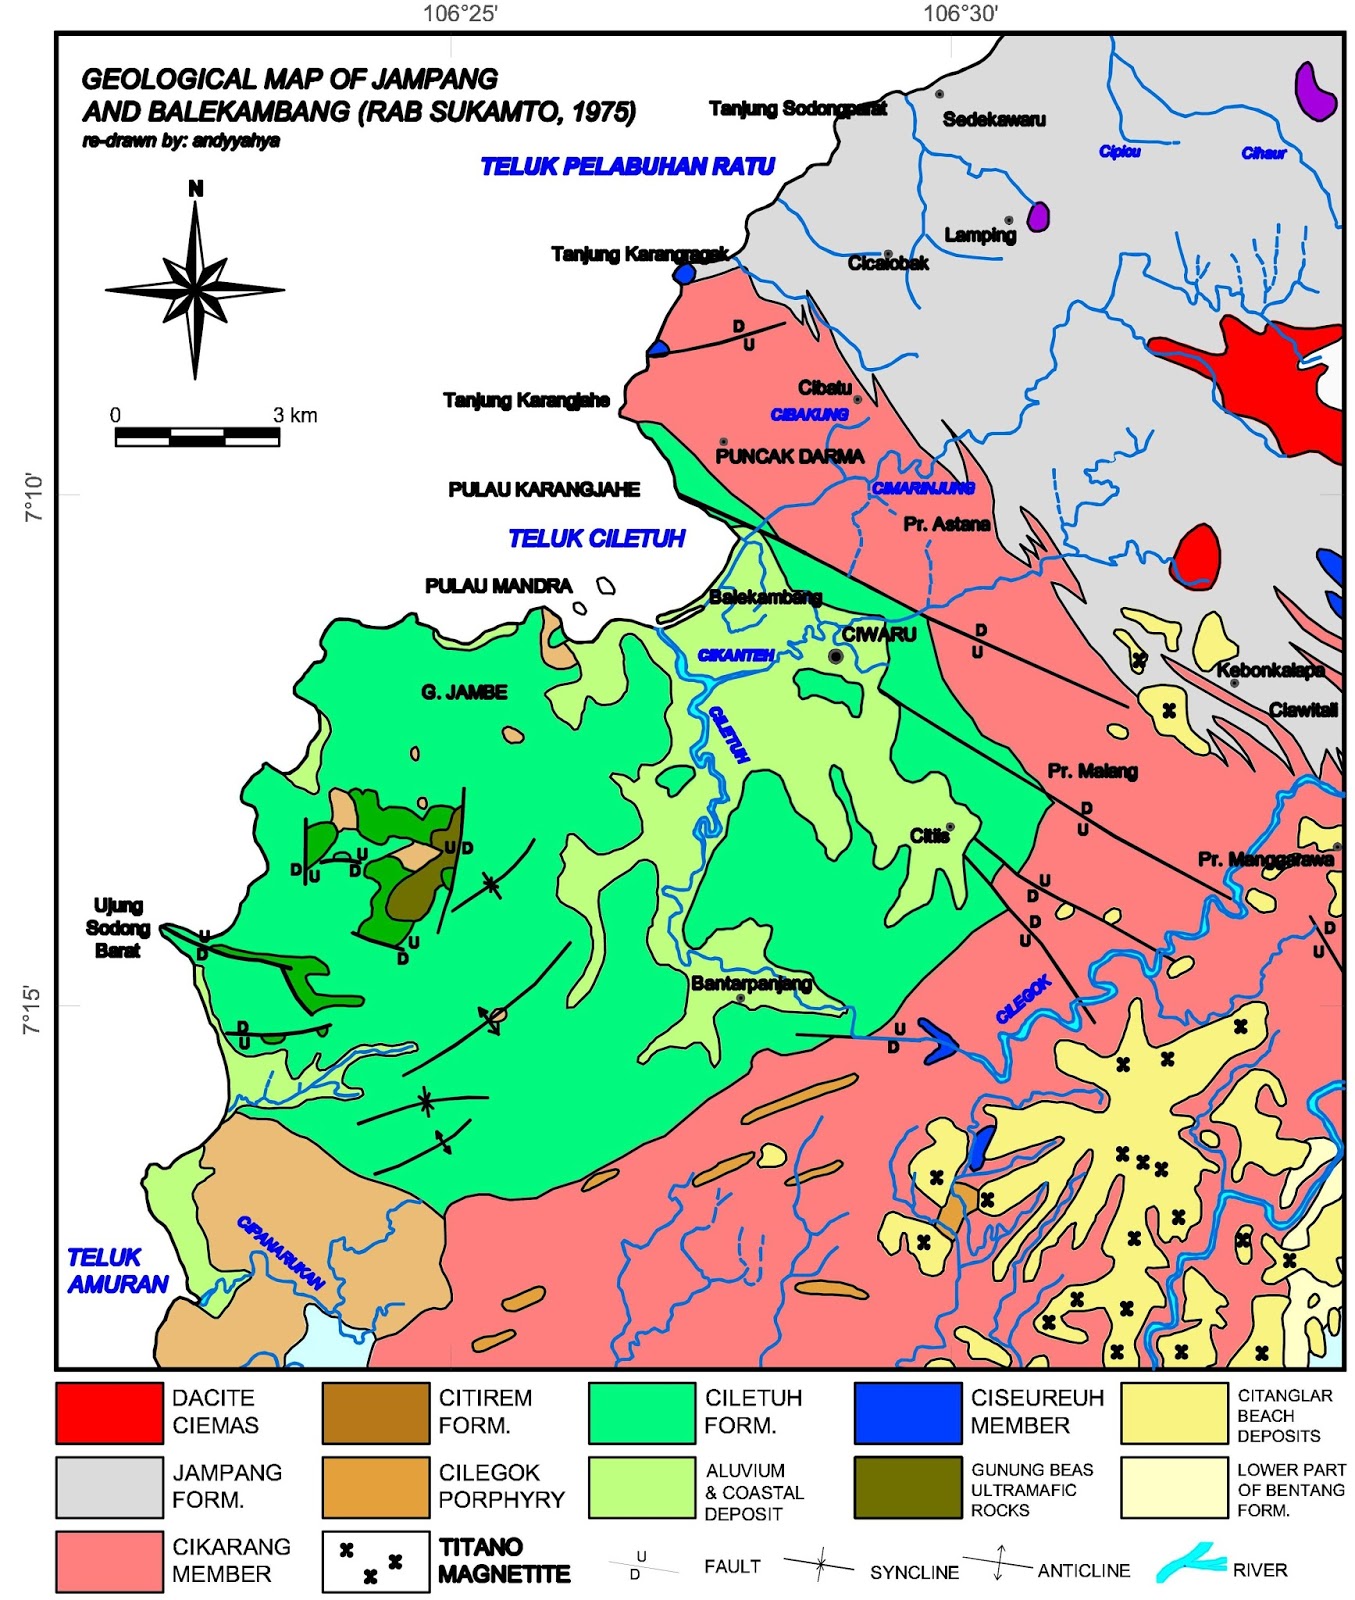 Peta geologi Jampang dan Balekambang digambar oleh dari Sukamto 1975 versi pdf tersedia disini